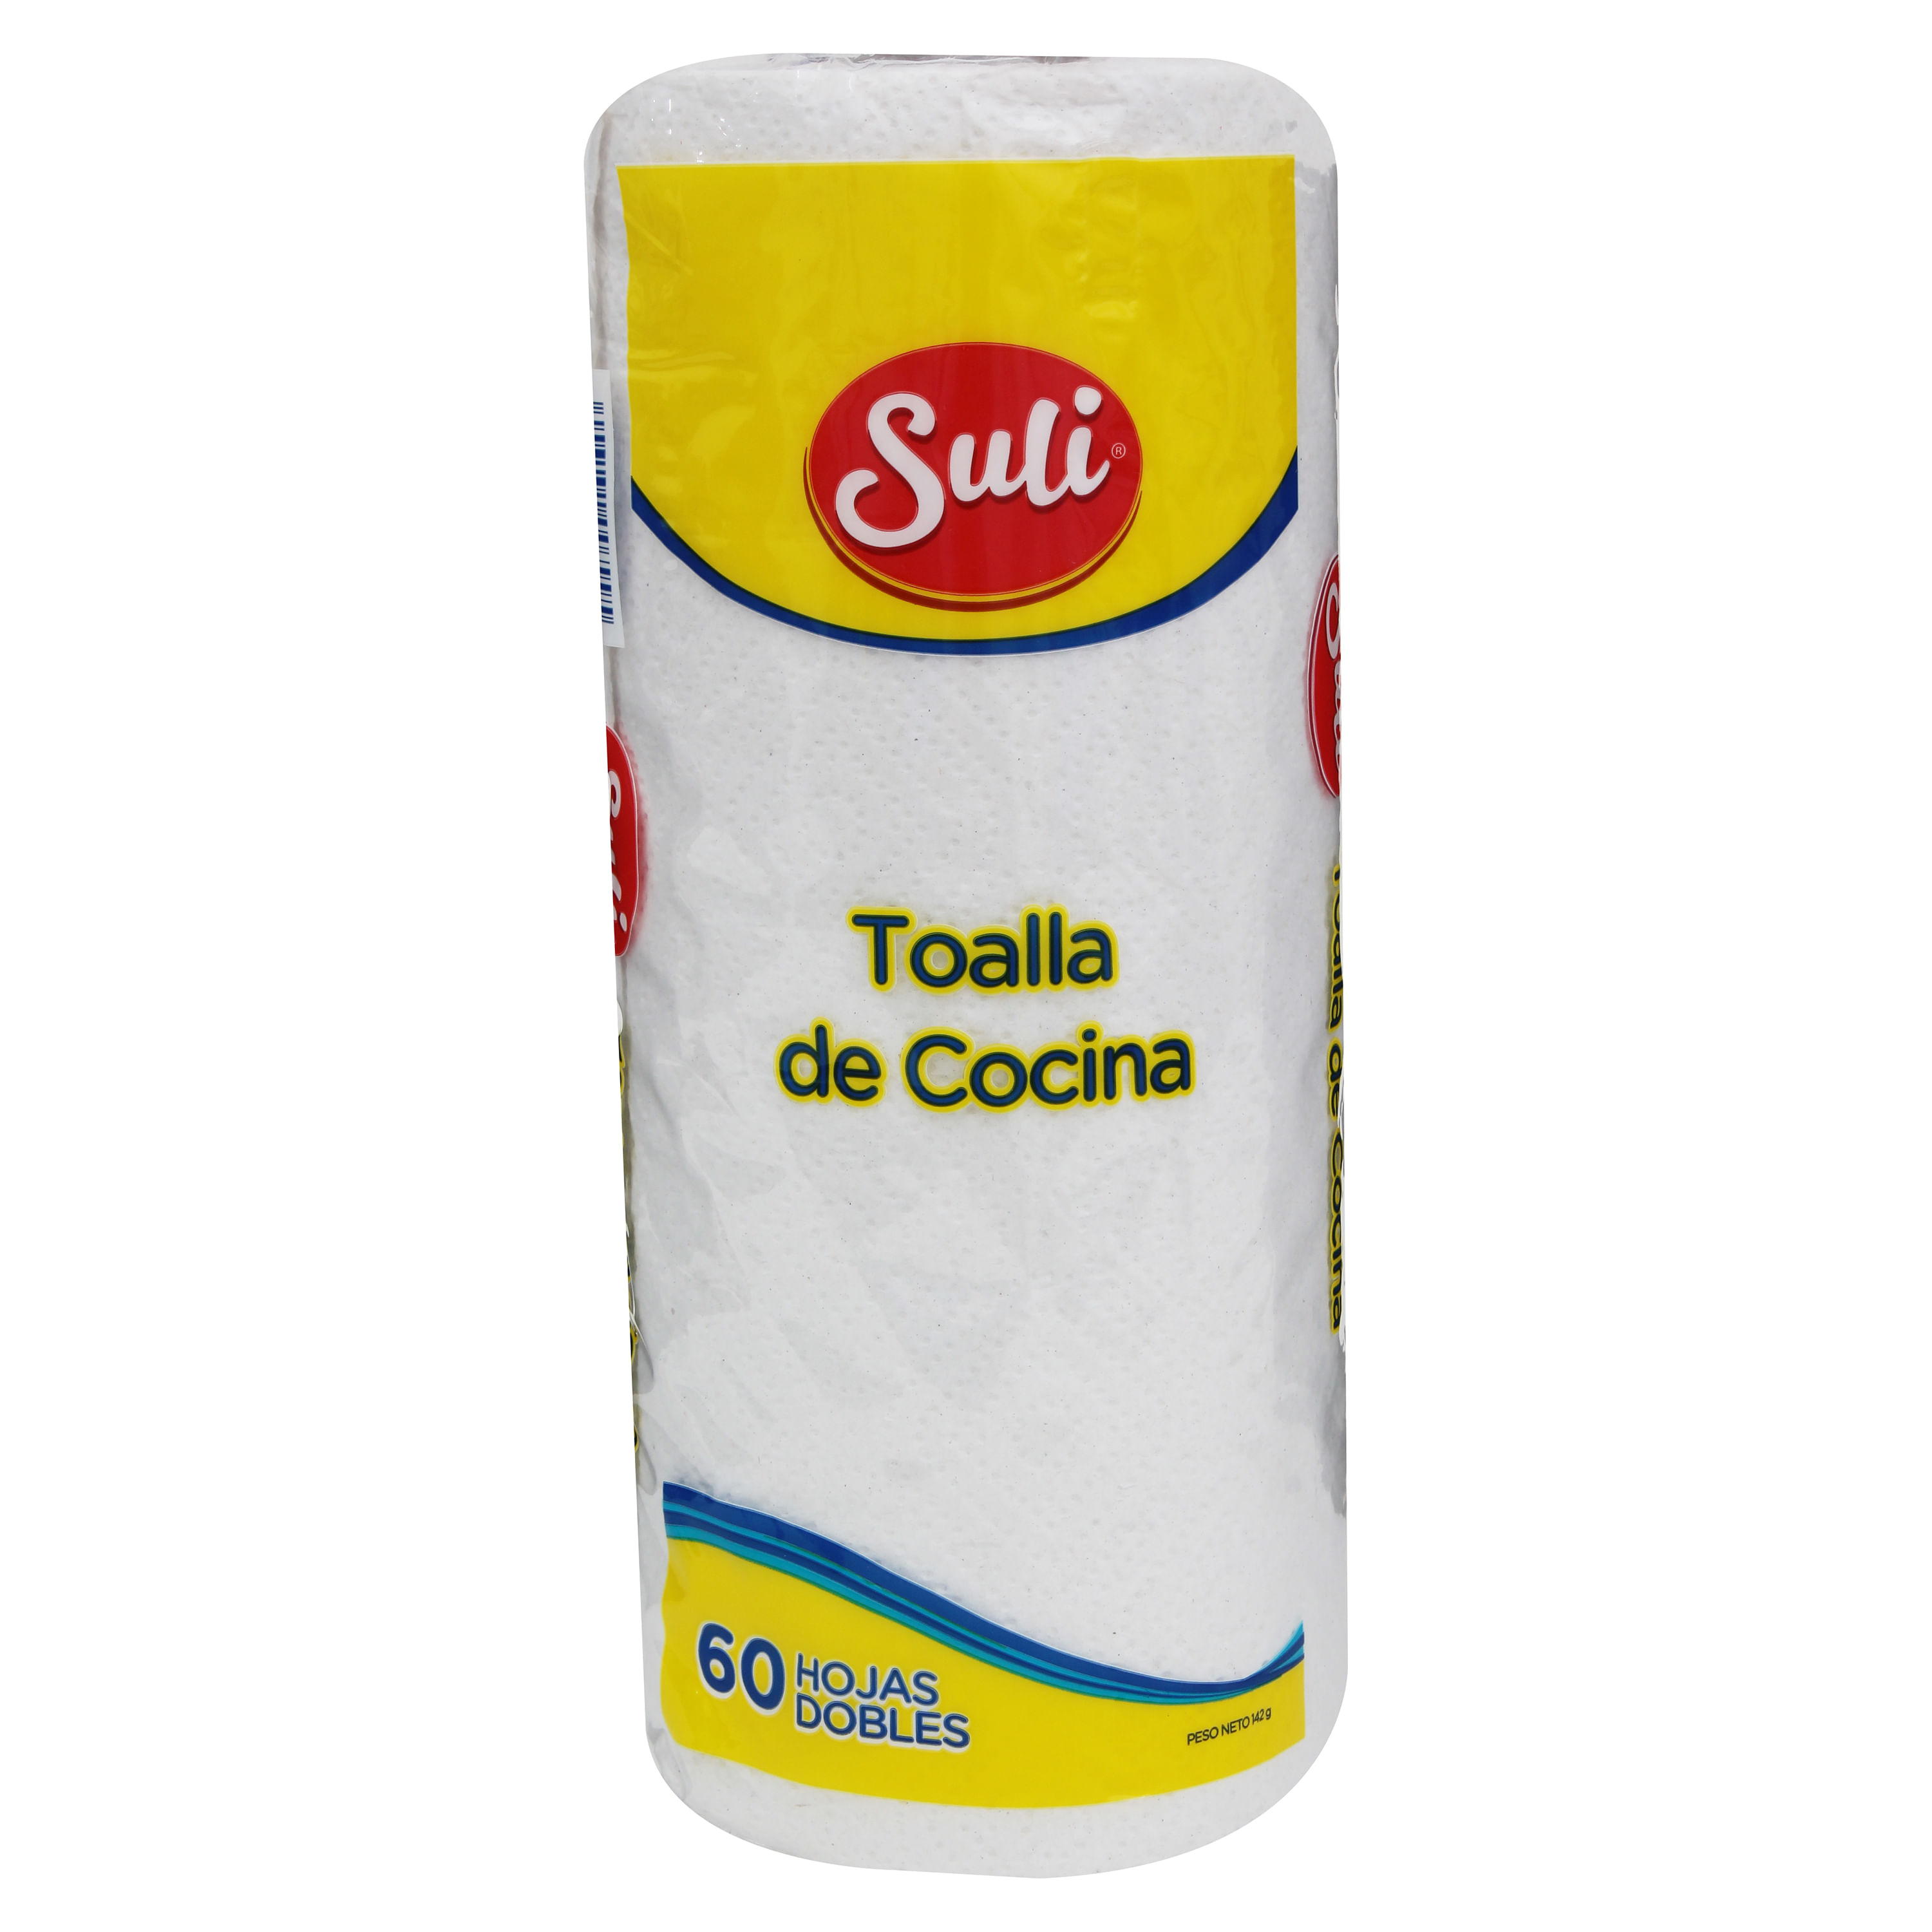 Comprar Toalla Suli Cocina 60 Hojas - 3 Rollos, Walmart Costa Rica - Maxi  Palí